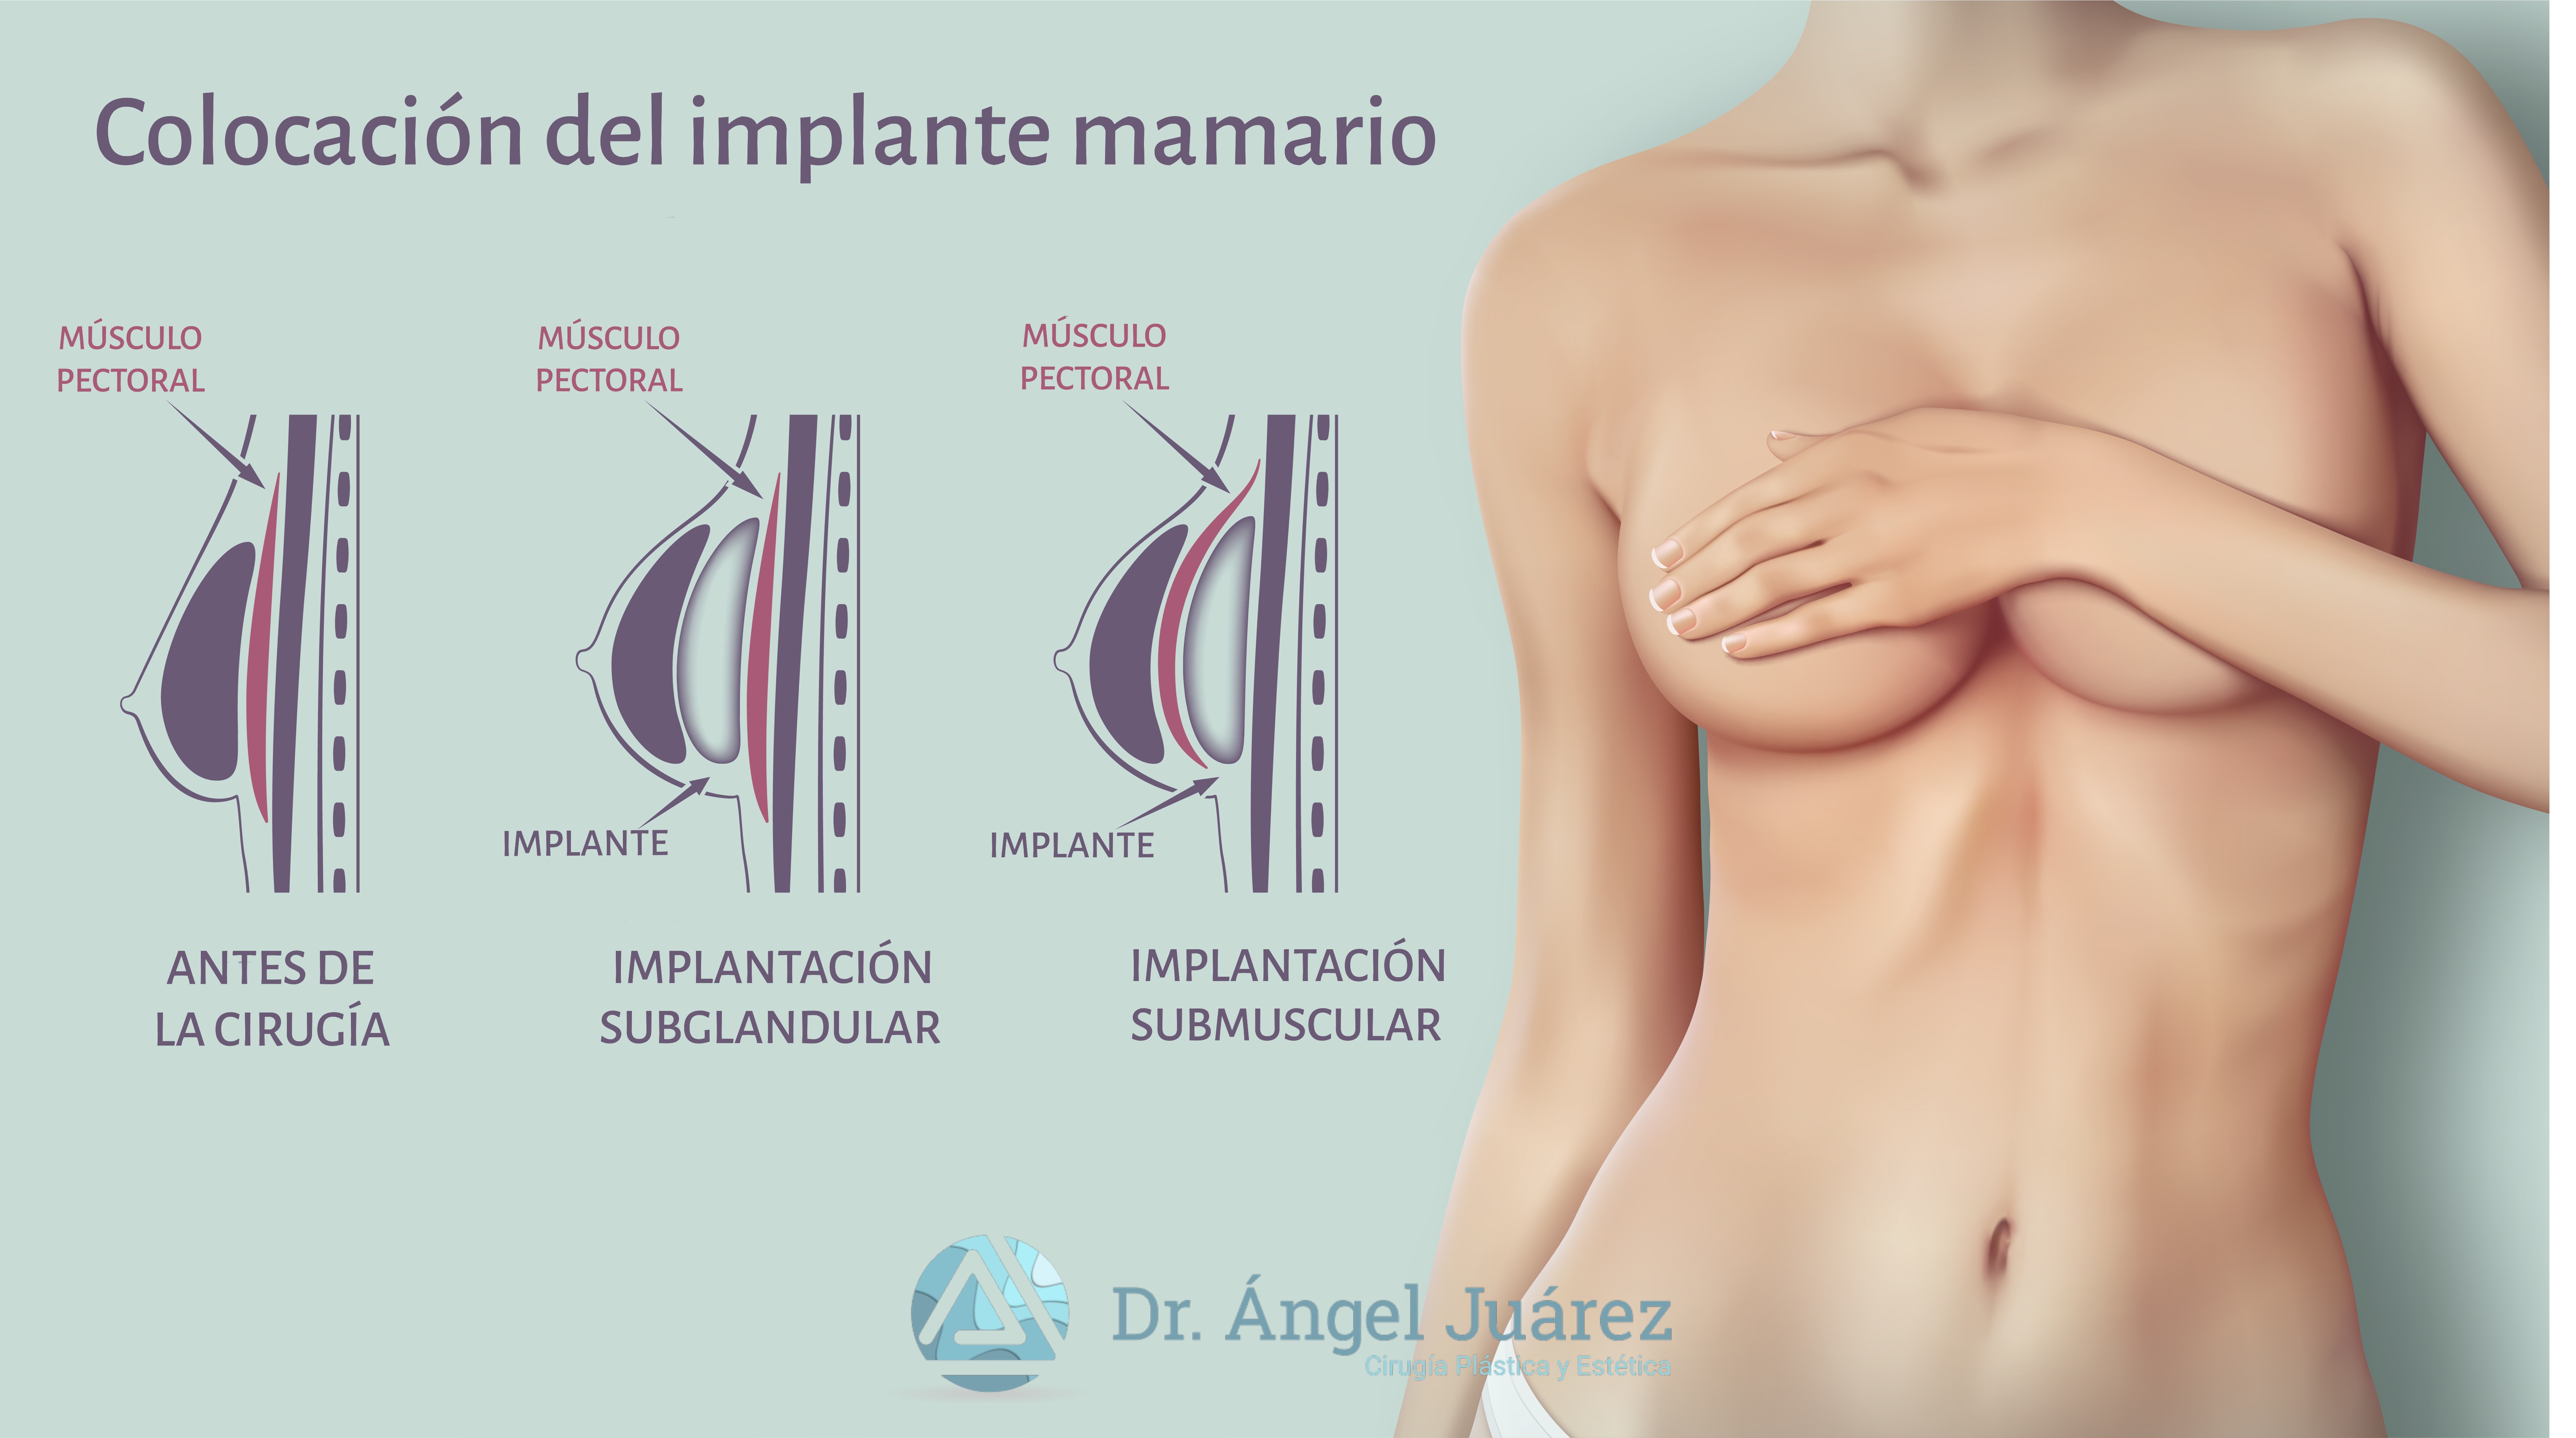 Colocación del implante mamario - Dr. Ángel Juárez